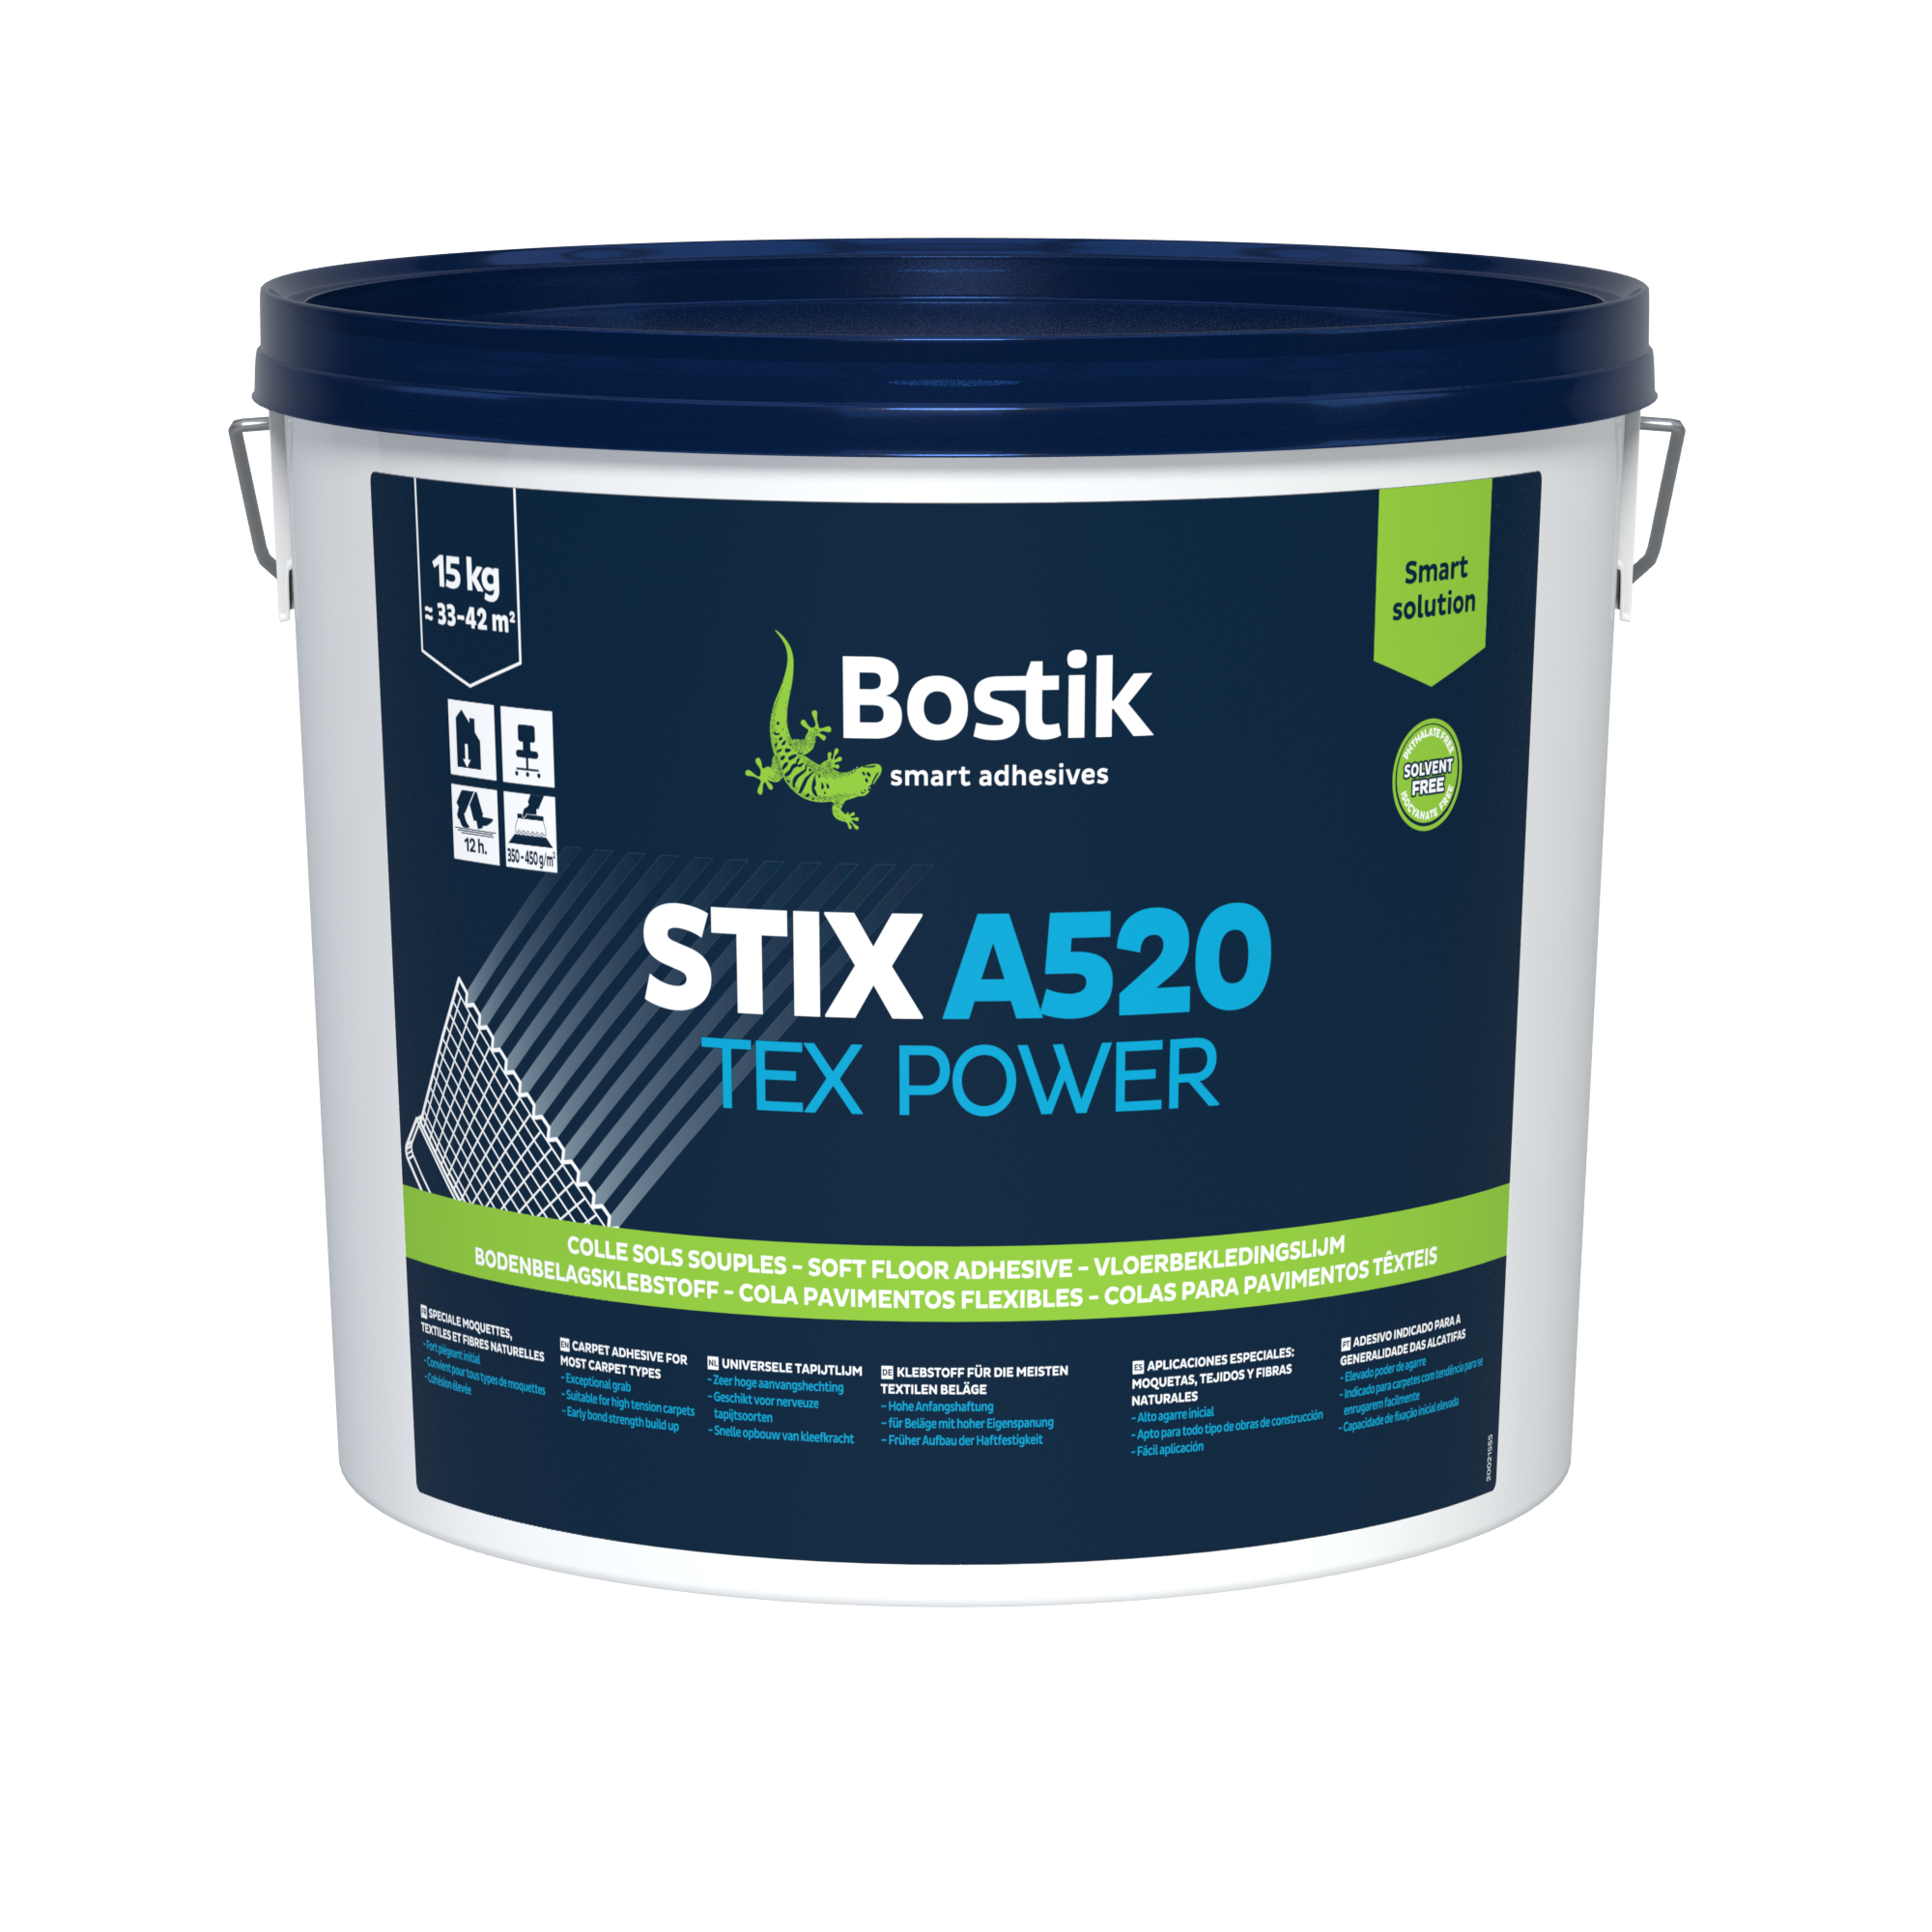 BOSTIK-30617215-Packaging-avant-STIX-A520-TEX-POWER-colle-sols-souples-15kg-FR-640x480.png